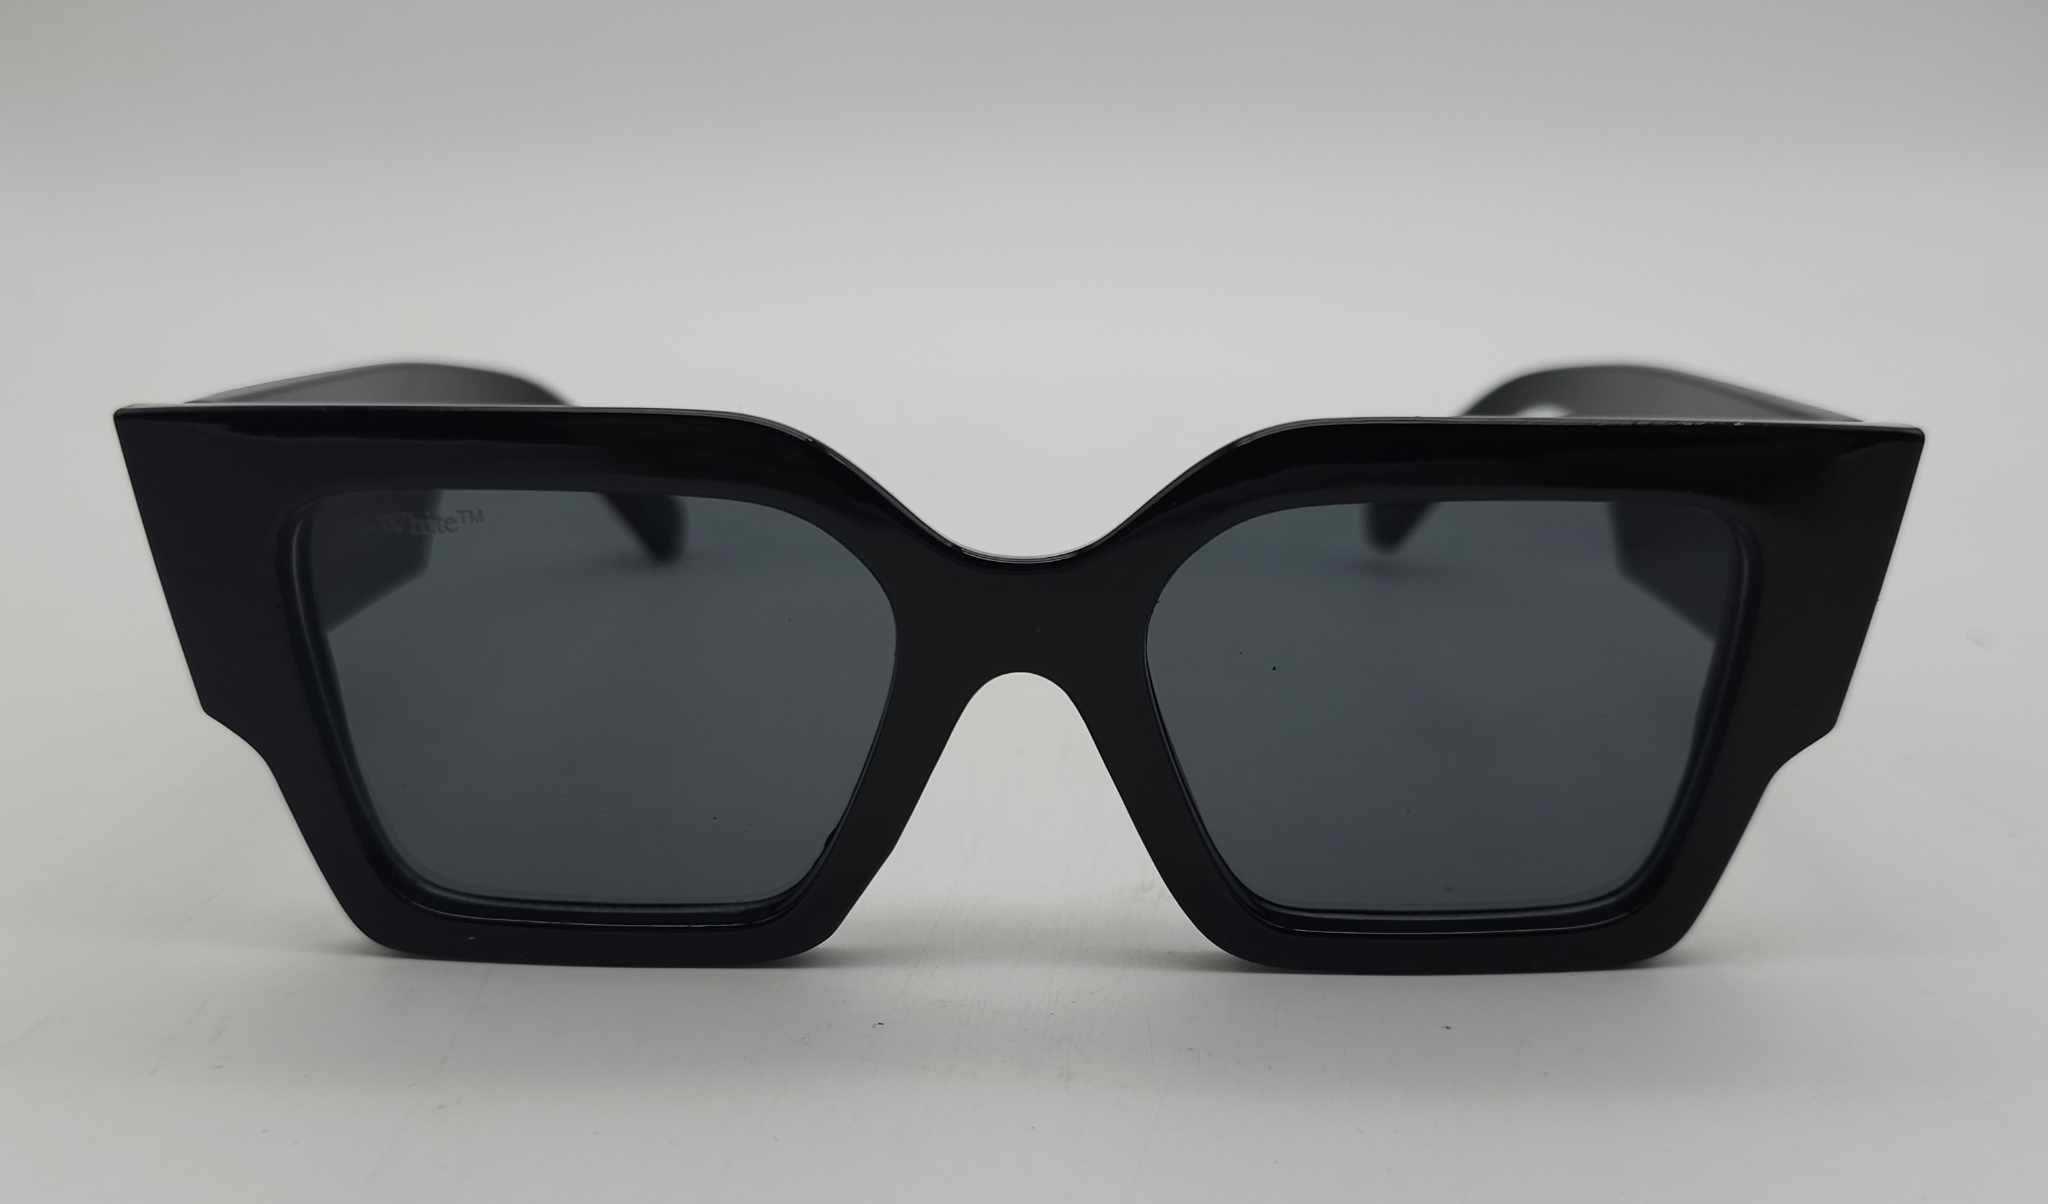 Of White óculos pretos novo modelo